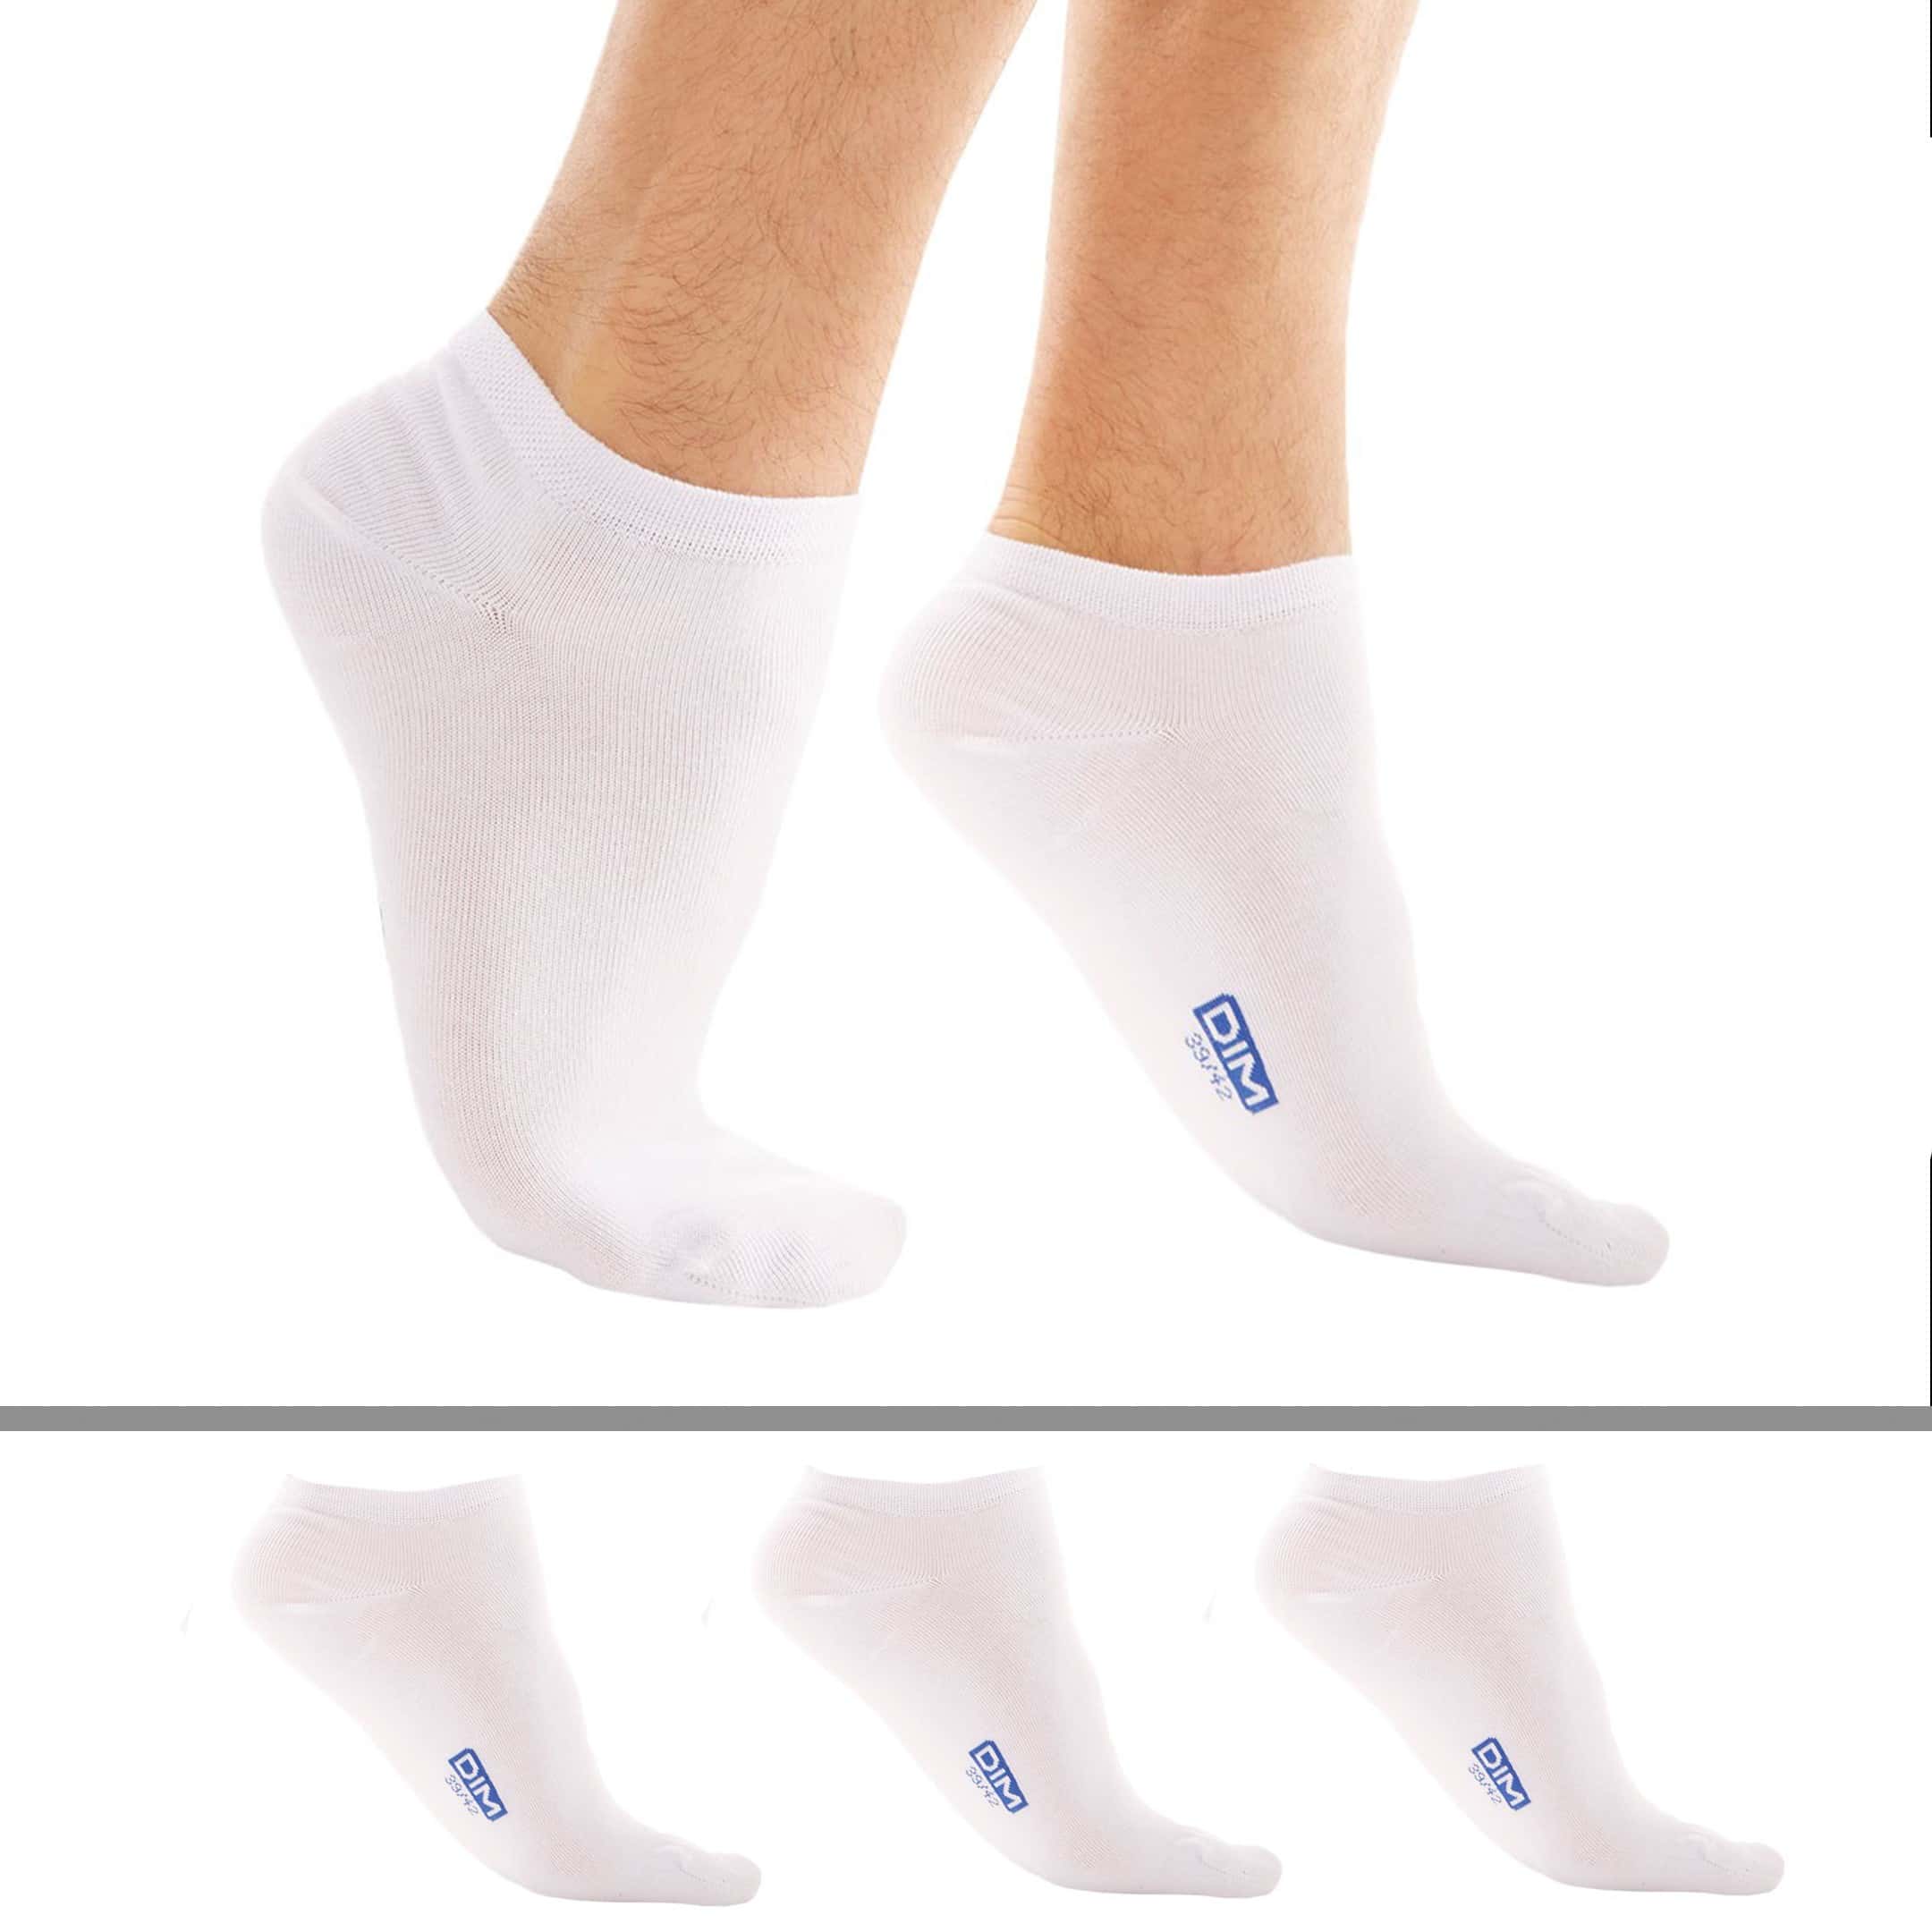 https://www.inderwear.com/149729/lot-de-3-paires-de-socquettes-invisibles-blanches-dim.jpg